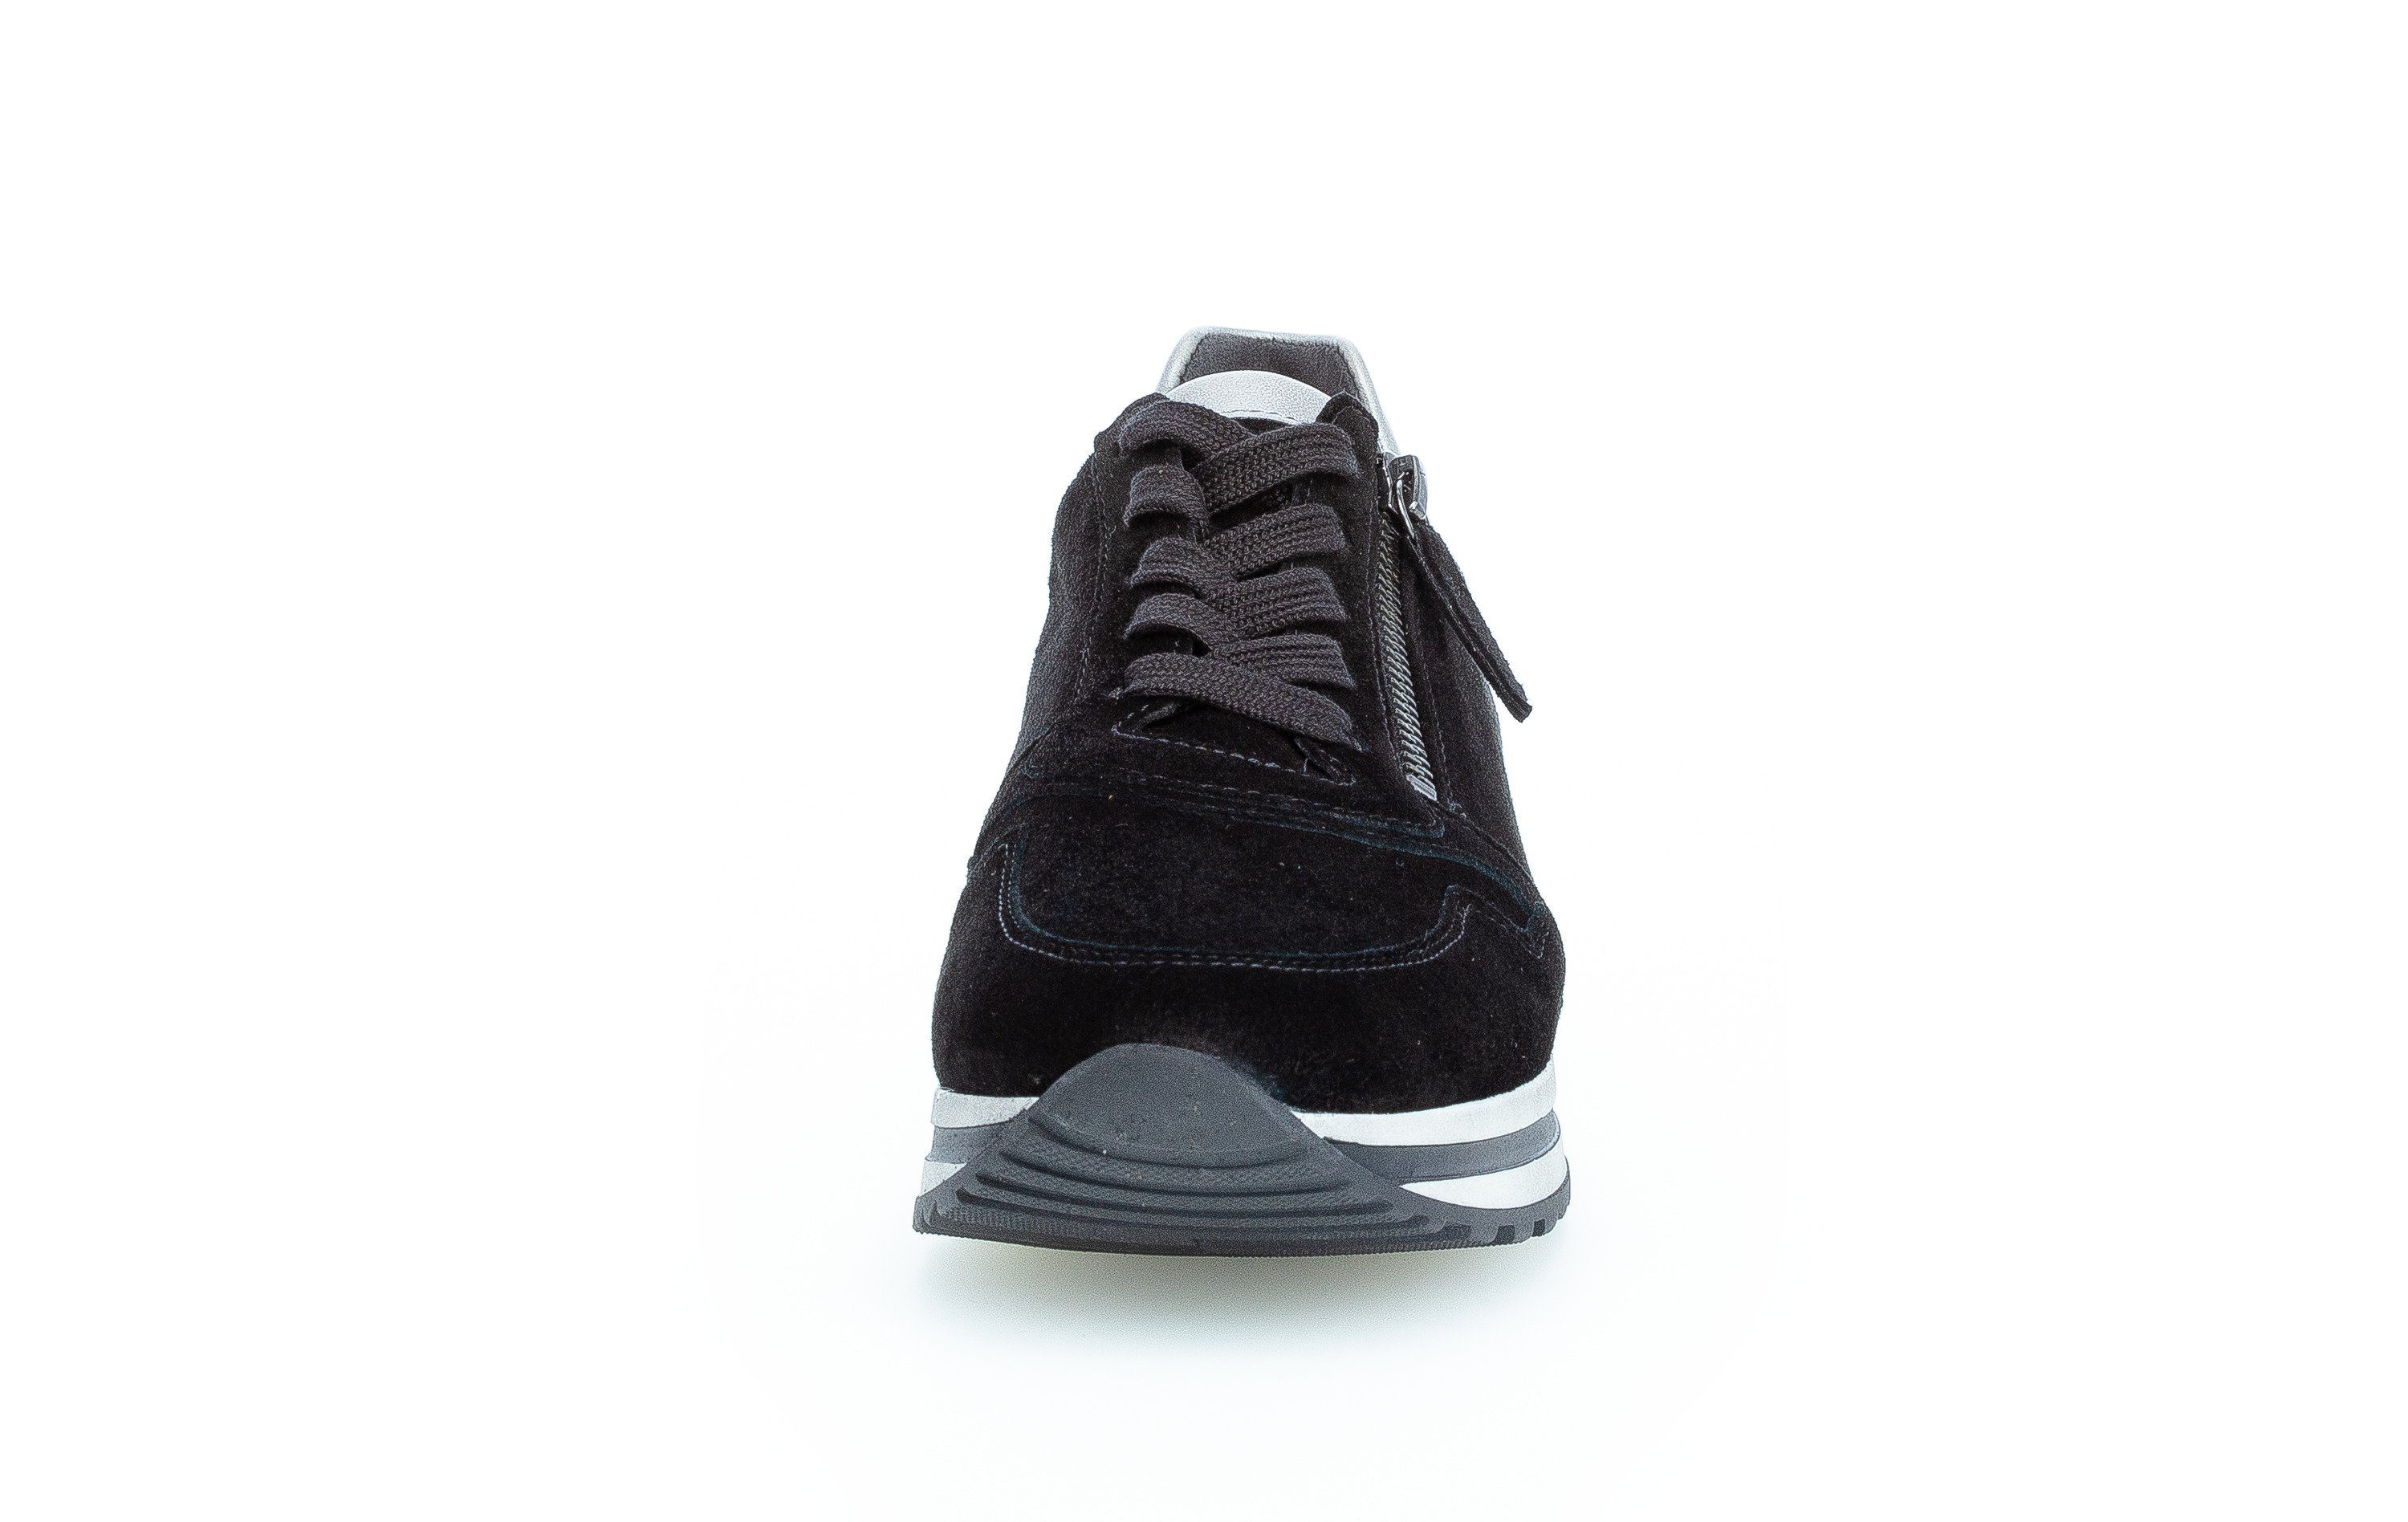 Sneaker Comfort schwarz-bunt-kombiniert-schwarz-bunt-kombiniert Gabor